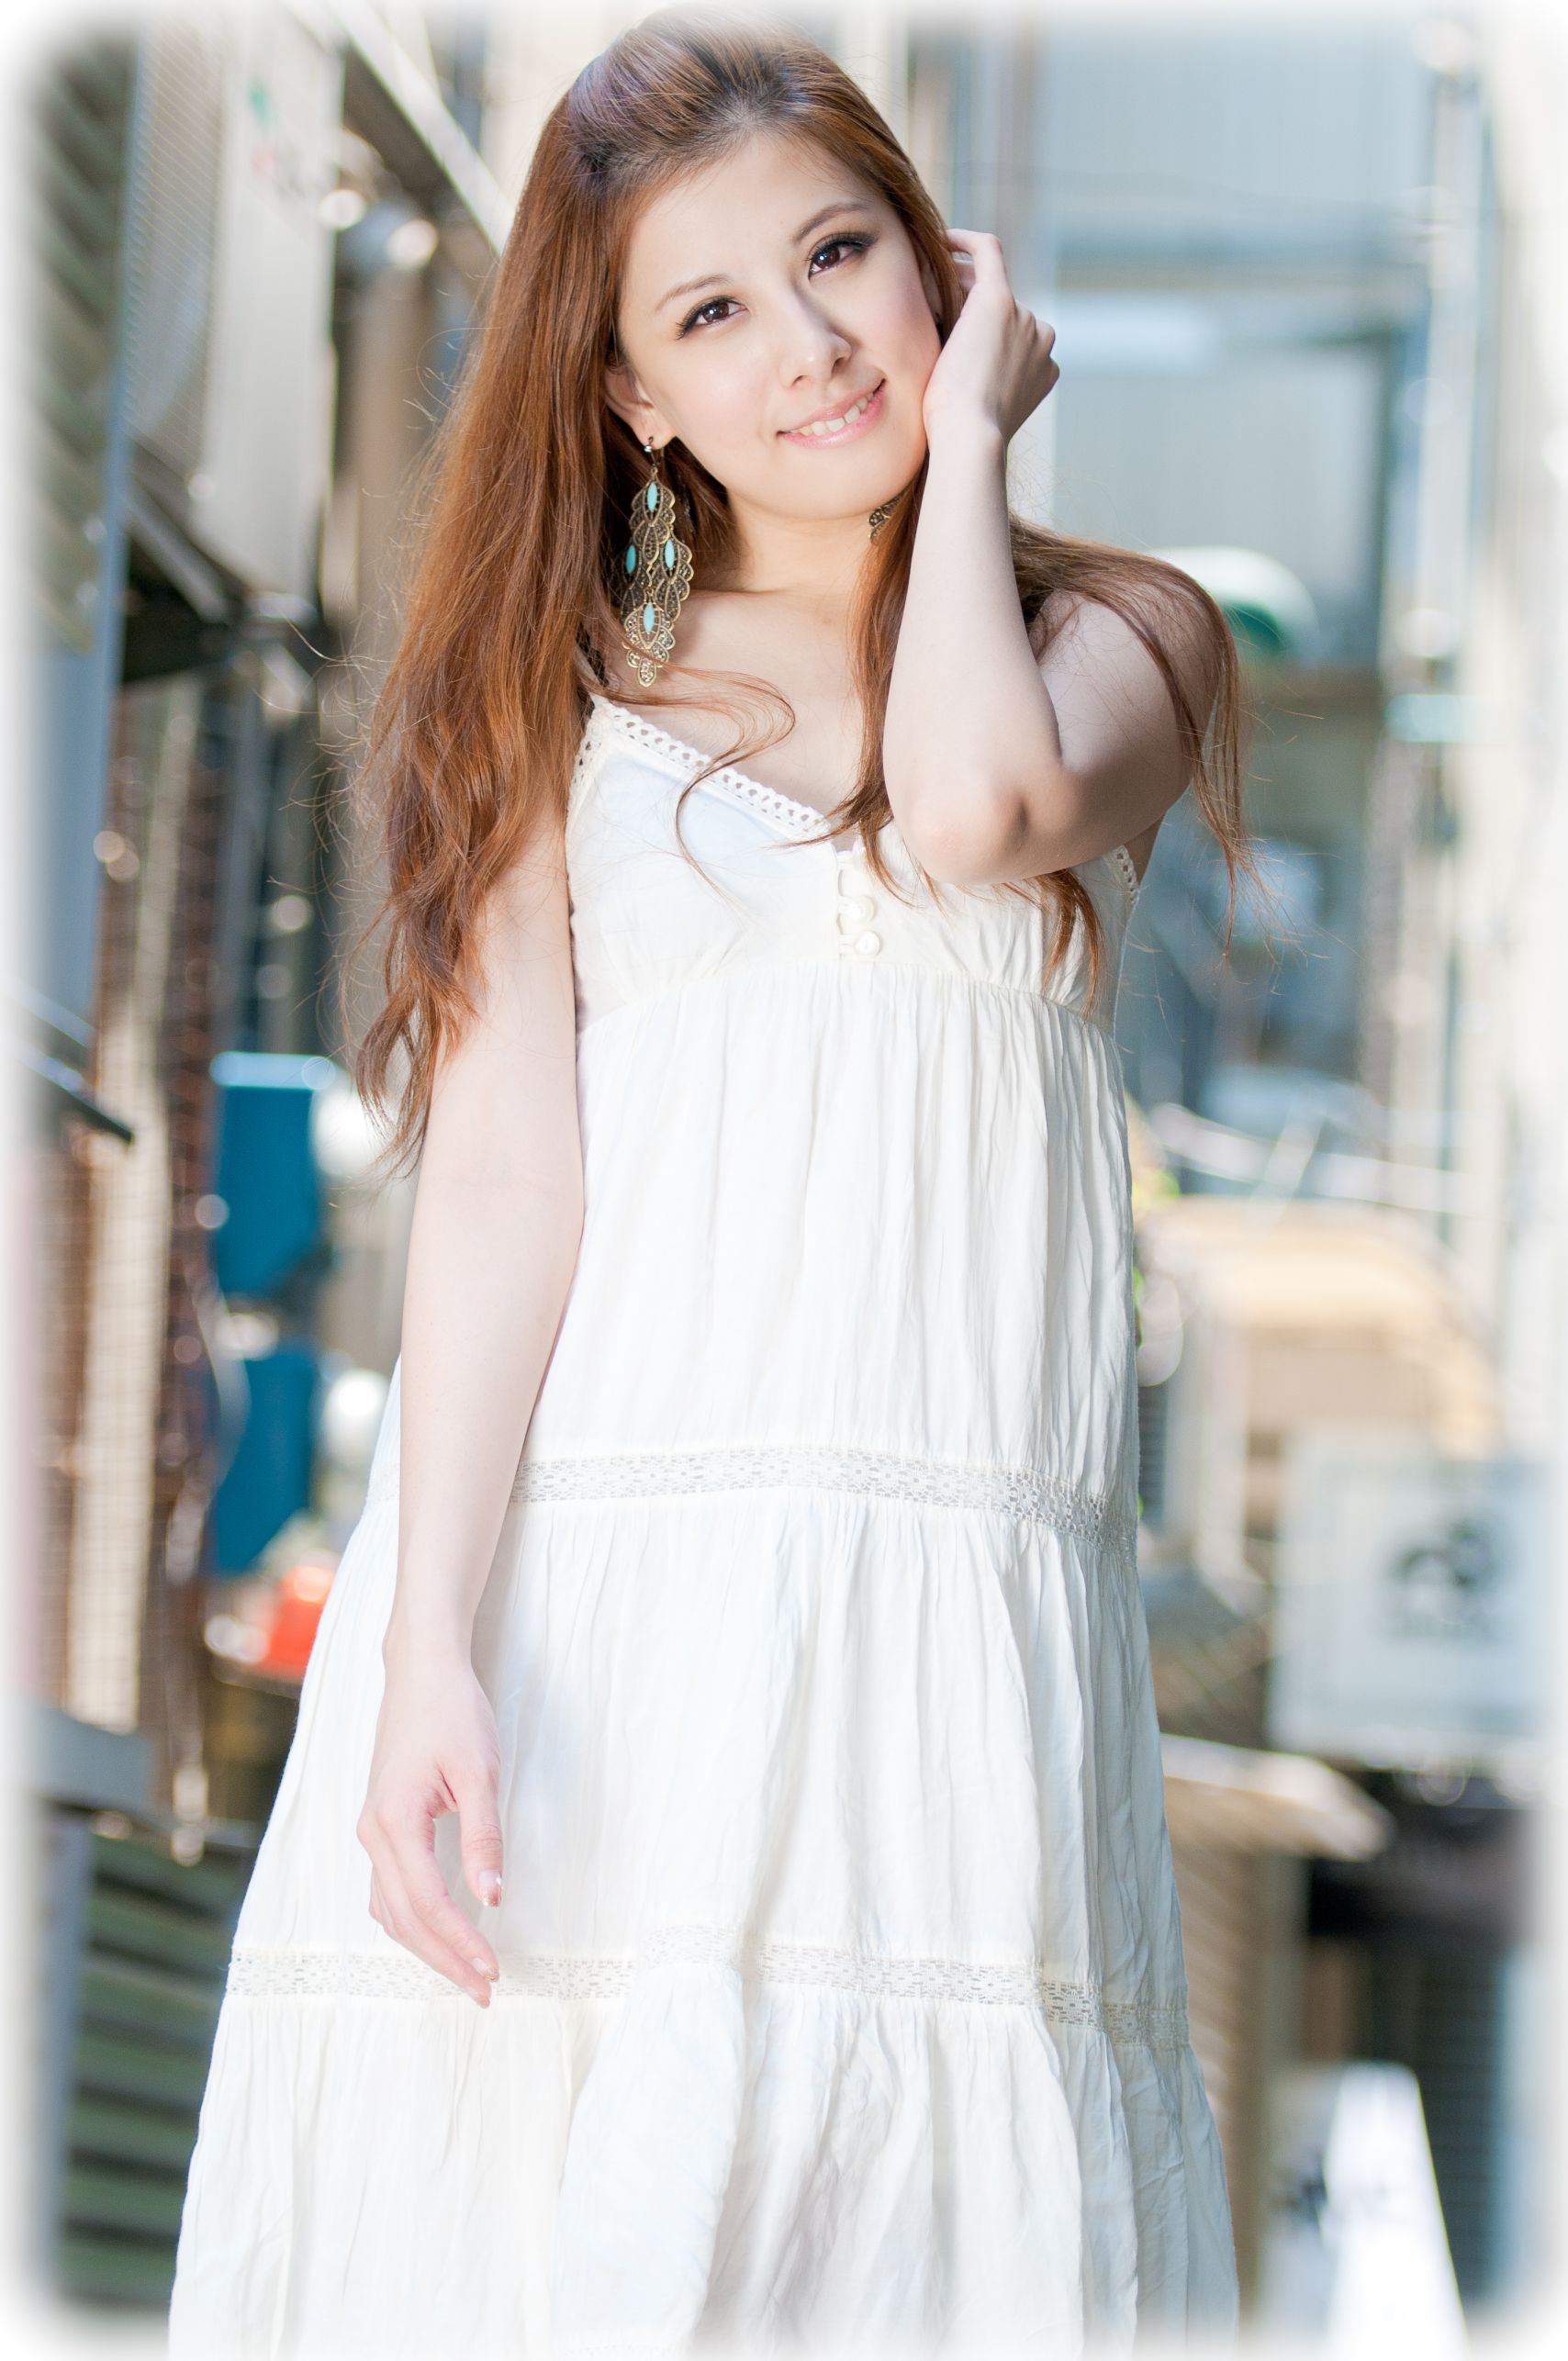 台湾美女kate小米 - 时尚优雅街拍高清图片